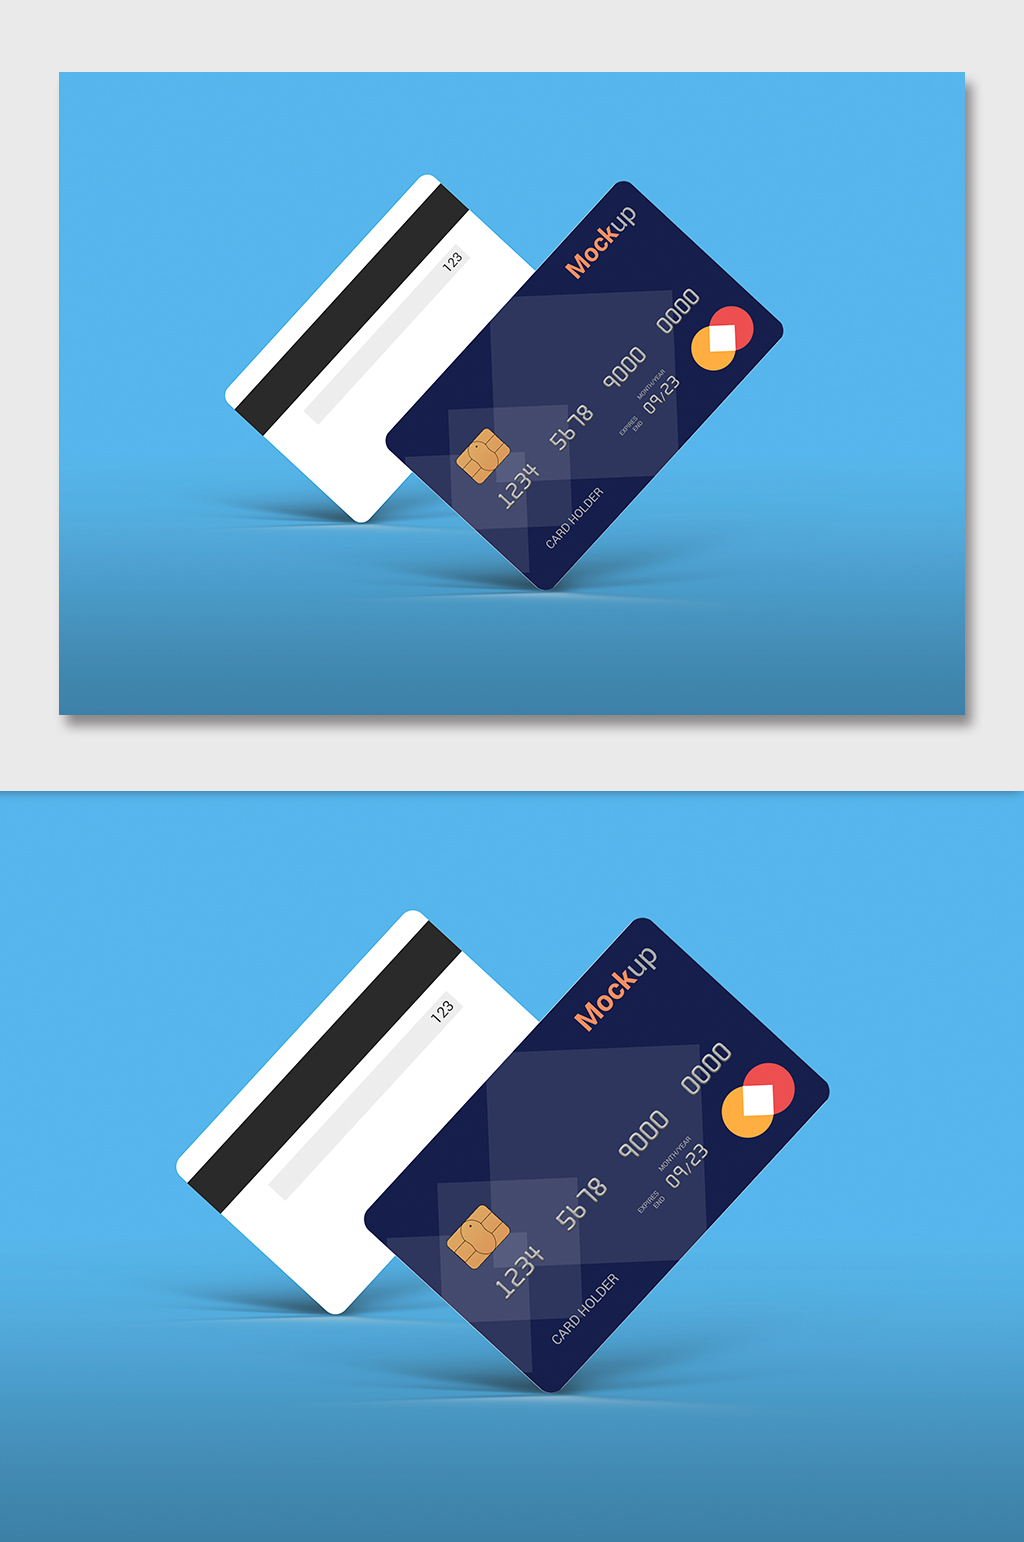 银行卡芯片创意设计图片